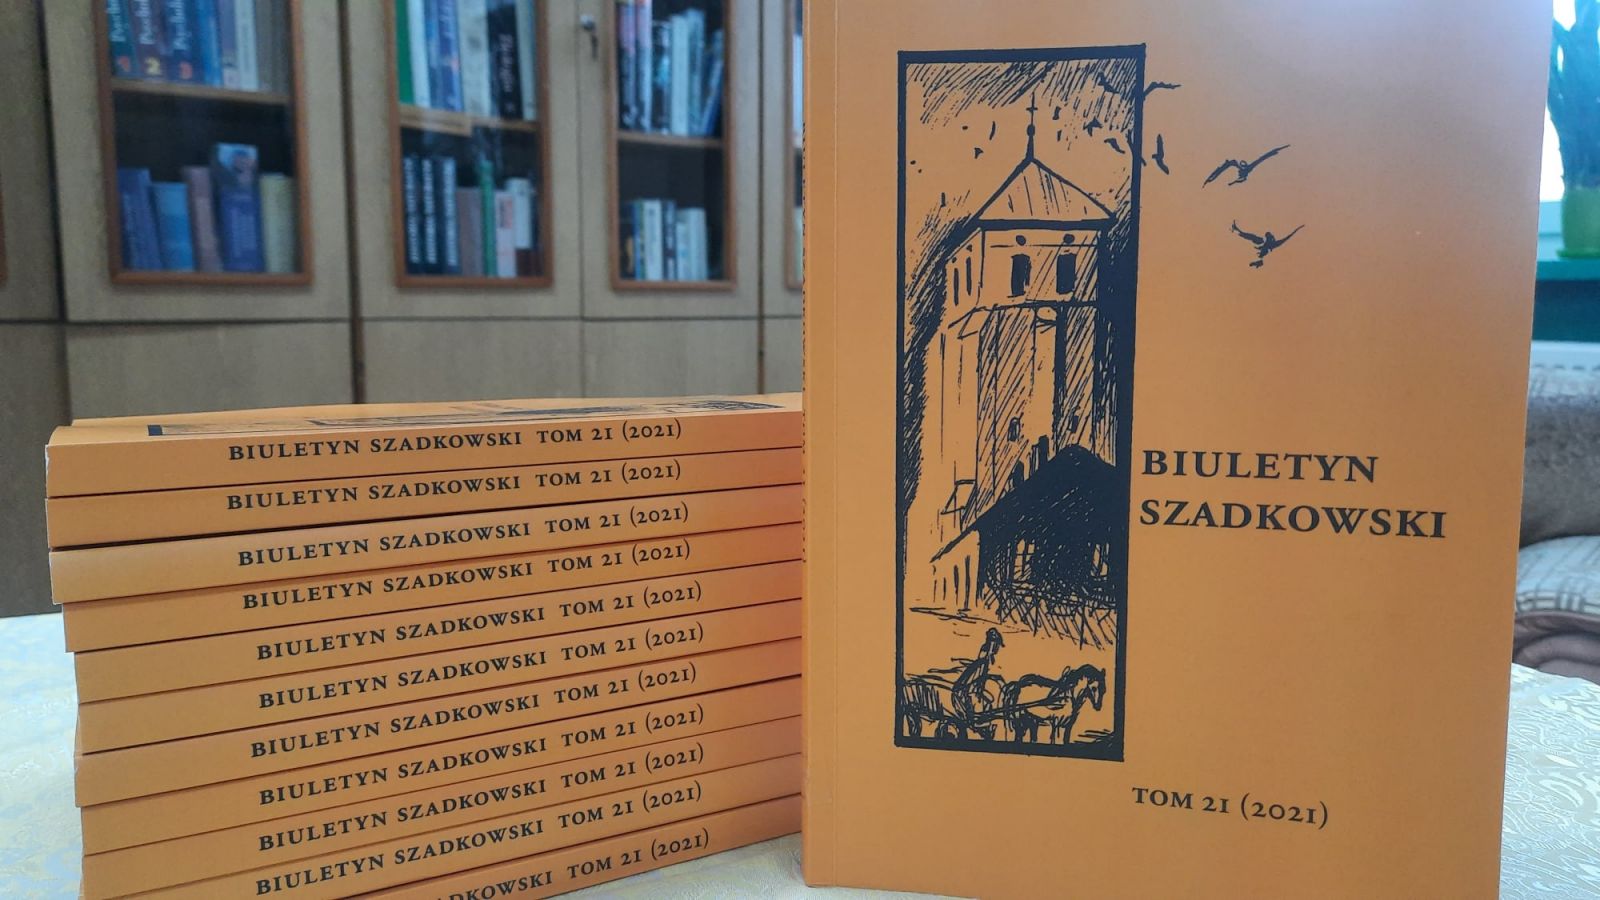 11 egzemplarzy "Biuletynu Szadkowskiego" ułożone na stoliku jeden na drugim, grzbietem okładki do przodu. Jedna książka ustawiona pionowo stroną tytułową. W tle widać oszklone regały z książkami